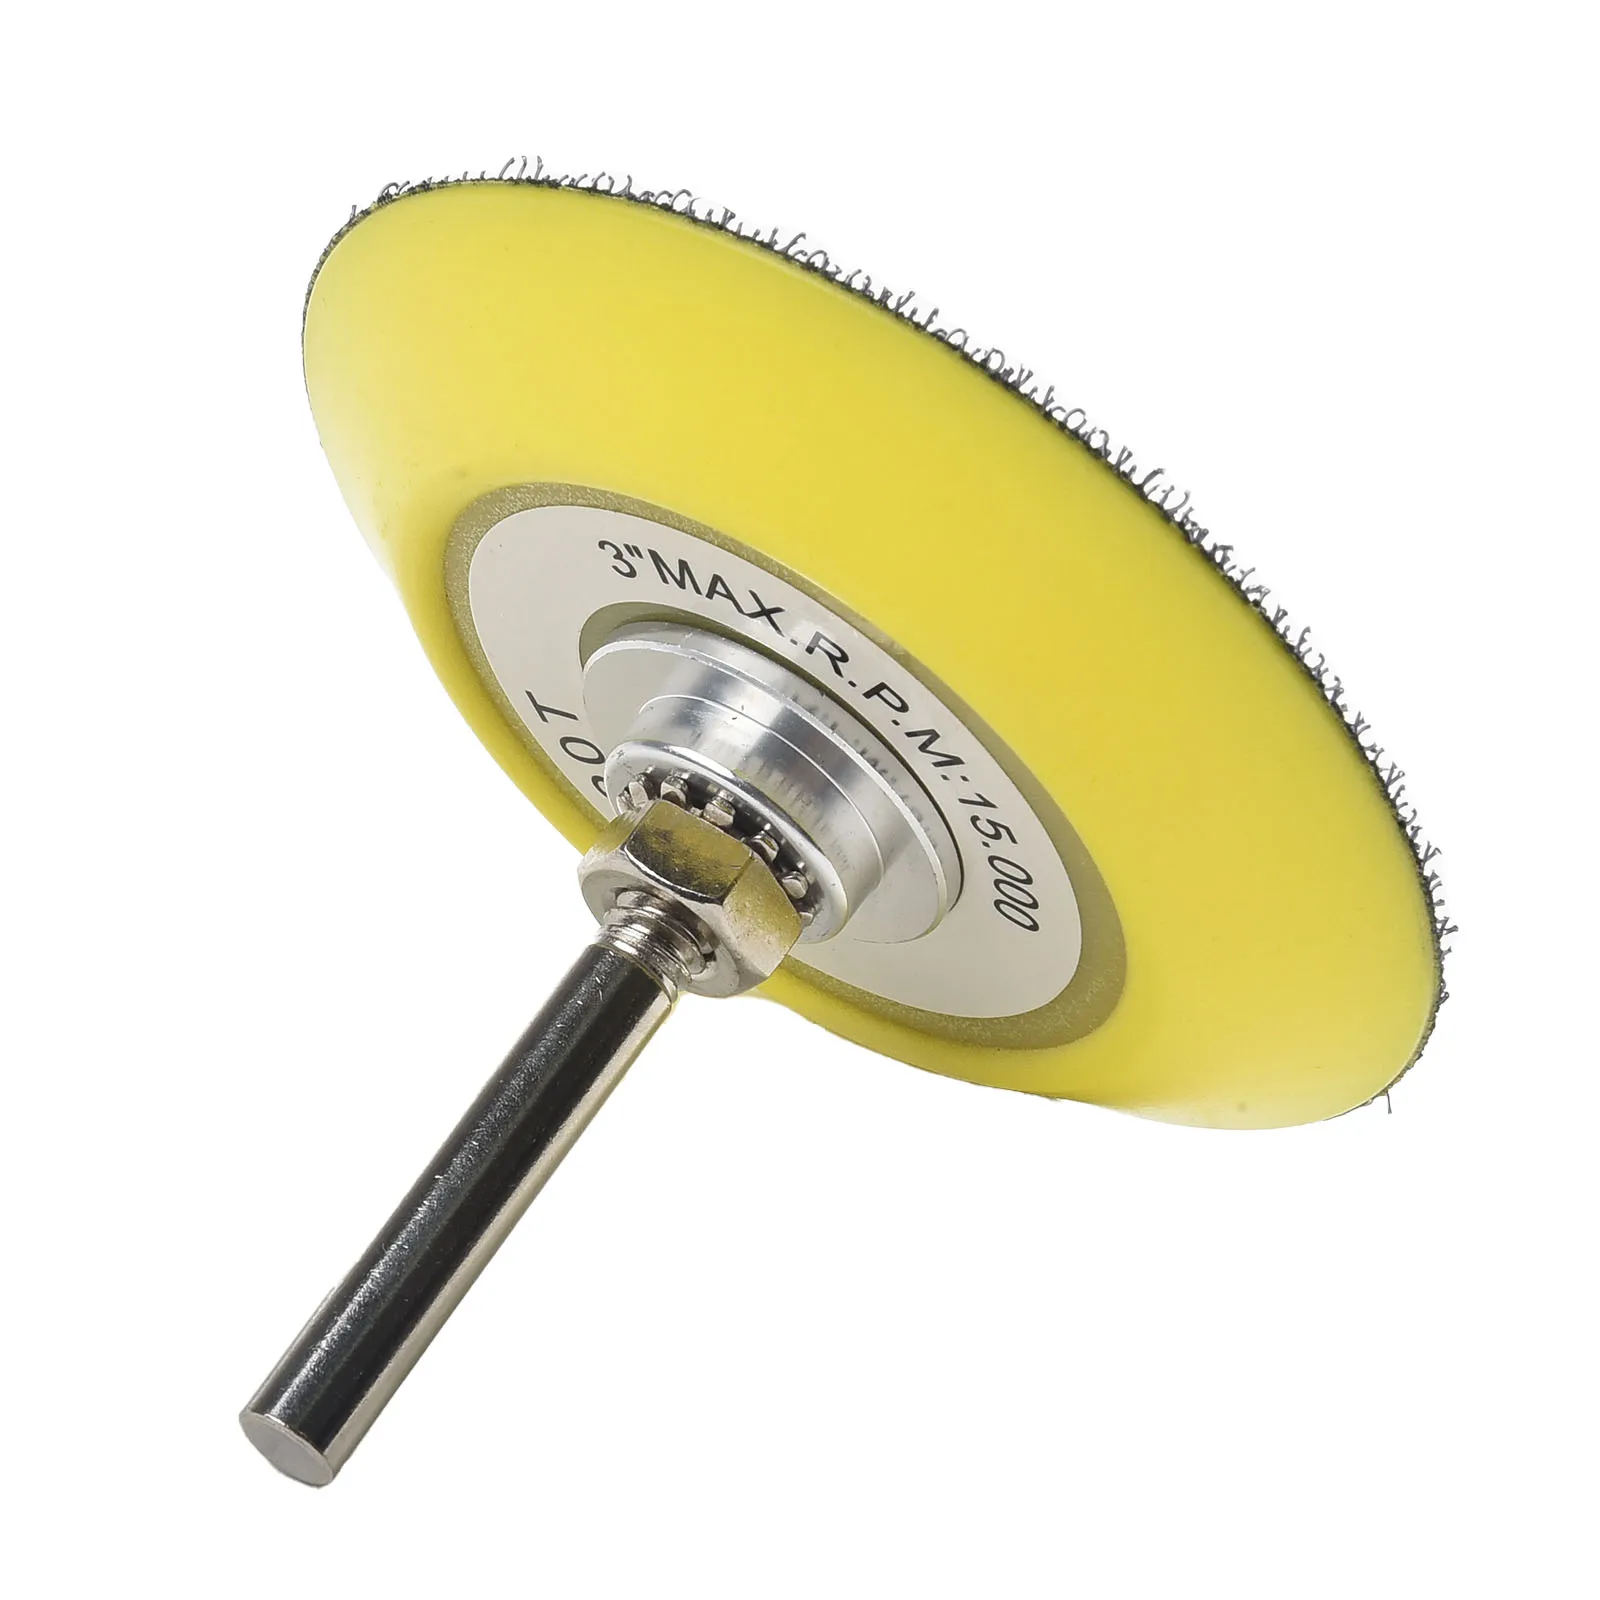 

Полировальный шлифовальный диск 3 дюйма/75 мм, подложка с крючком и петлей для пневматического шлифовального станка, электродрели, электроинструменты, аксессуары